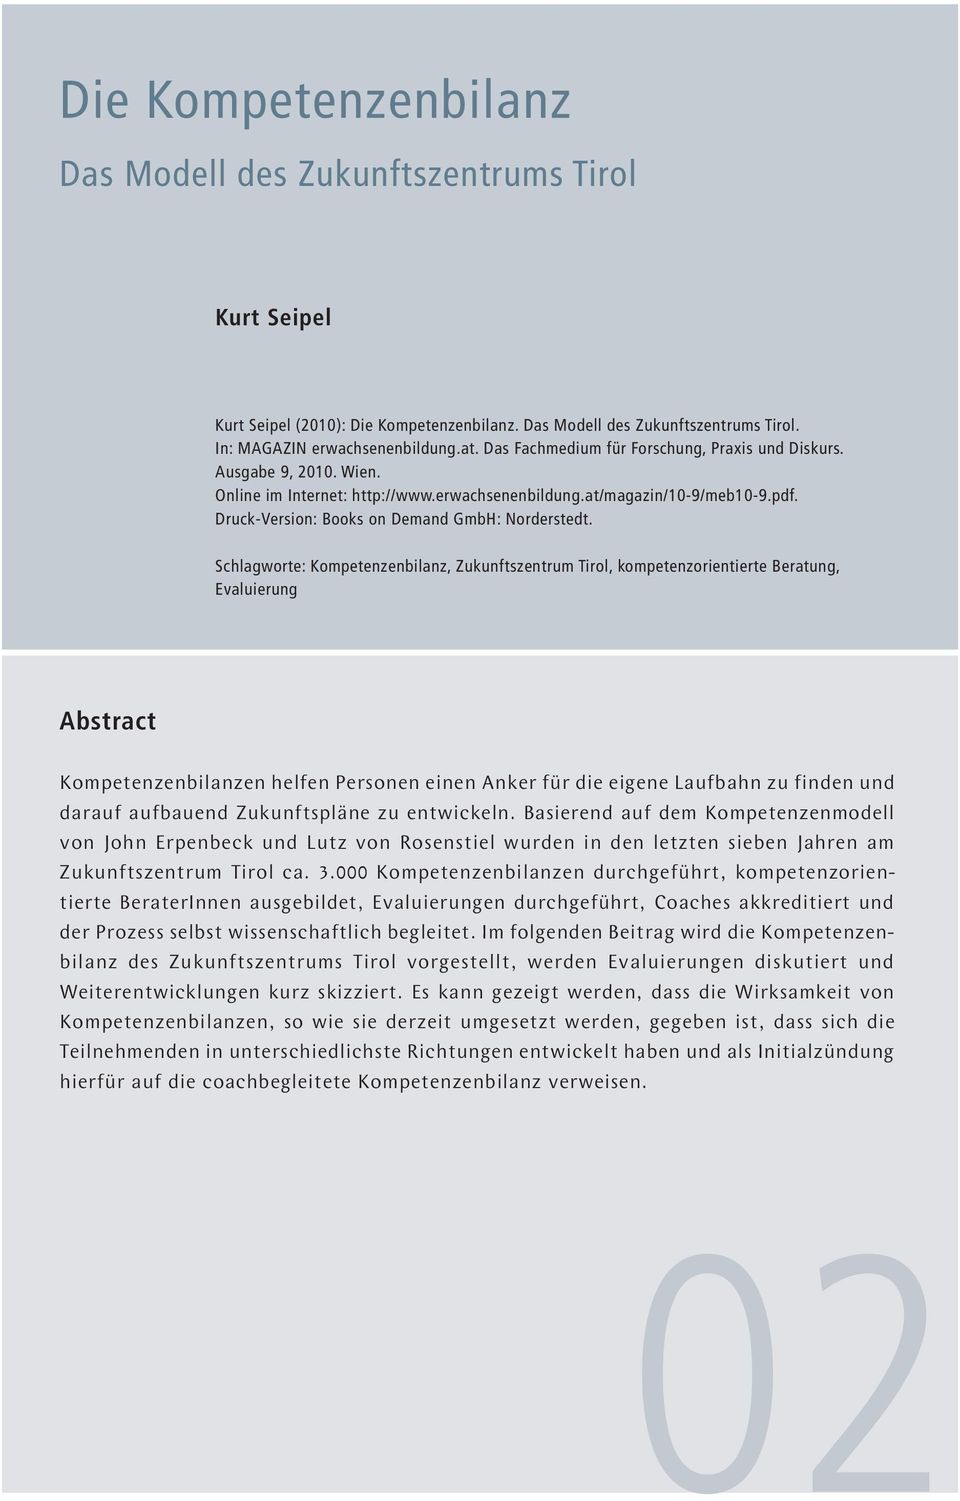 Druck-Version: Books on Demand GmbH: Norderstedt.